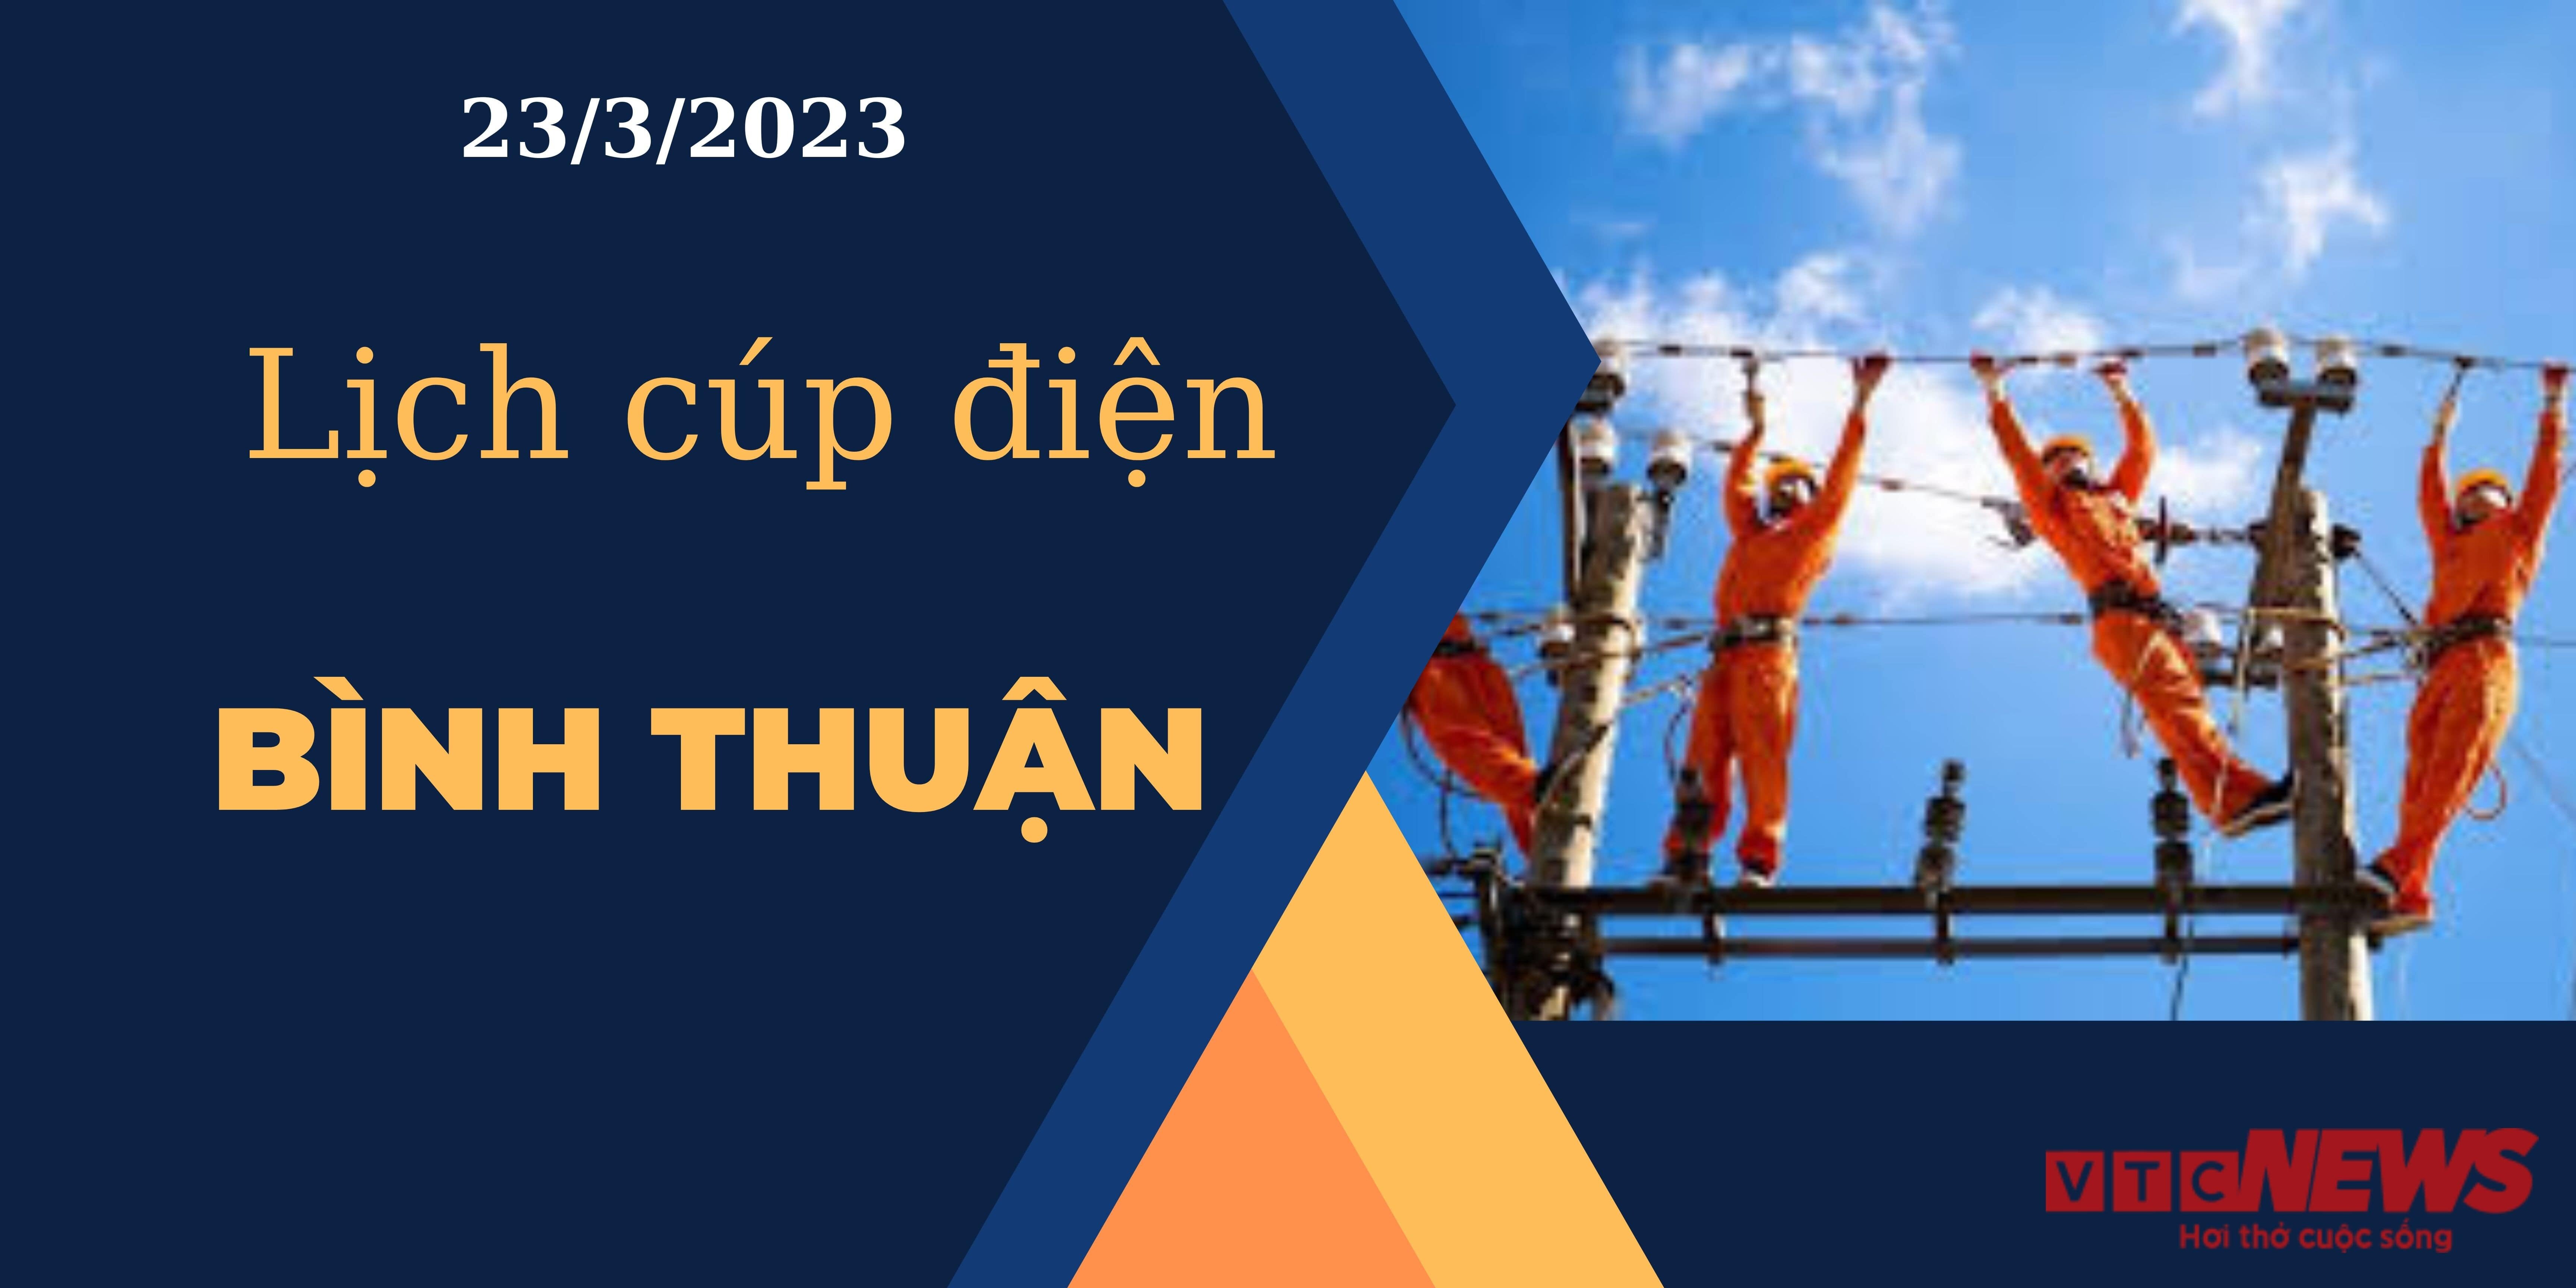 Lịch cúp điện hôm nay ngày 23/3/2023 tại Bình Thuận - 1